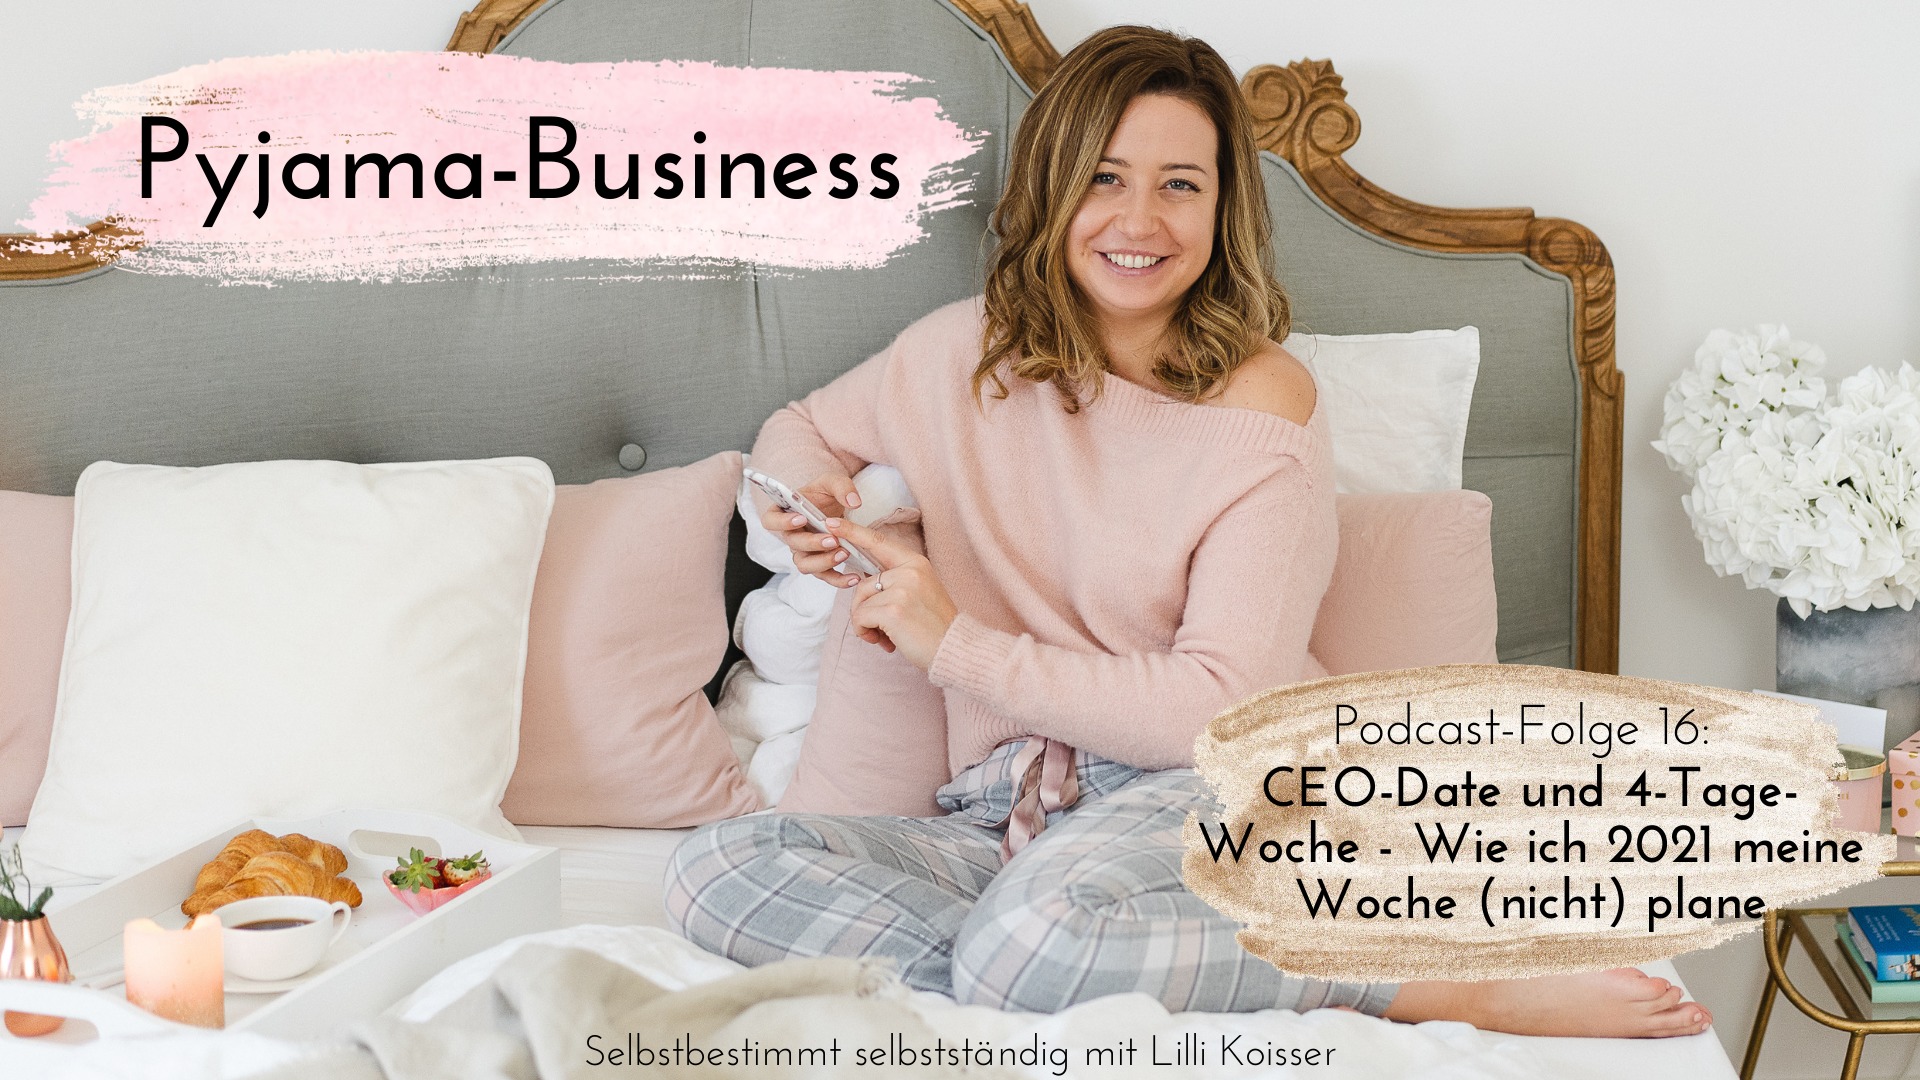 Pyjama-Business Podcast Folge 16 CEO-Date und 4-Tage-Woche - Wie ich 2021 meine Woche (nicht) plane